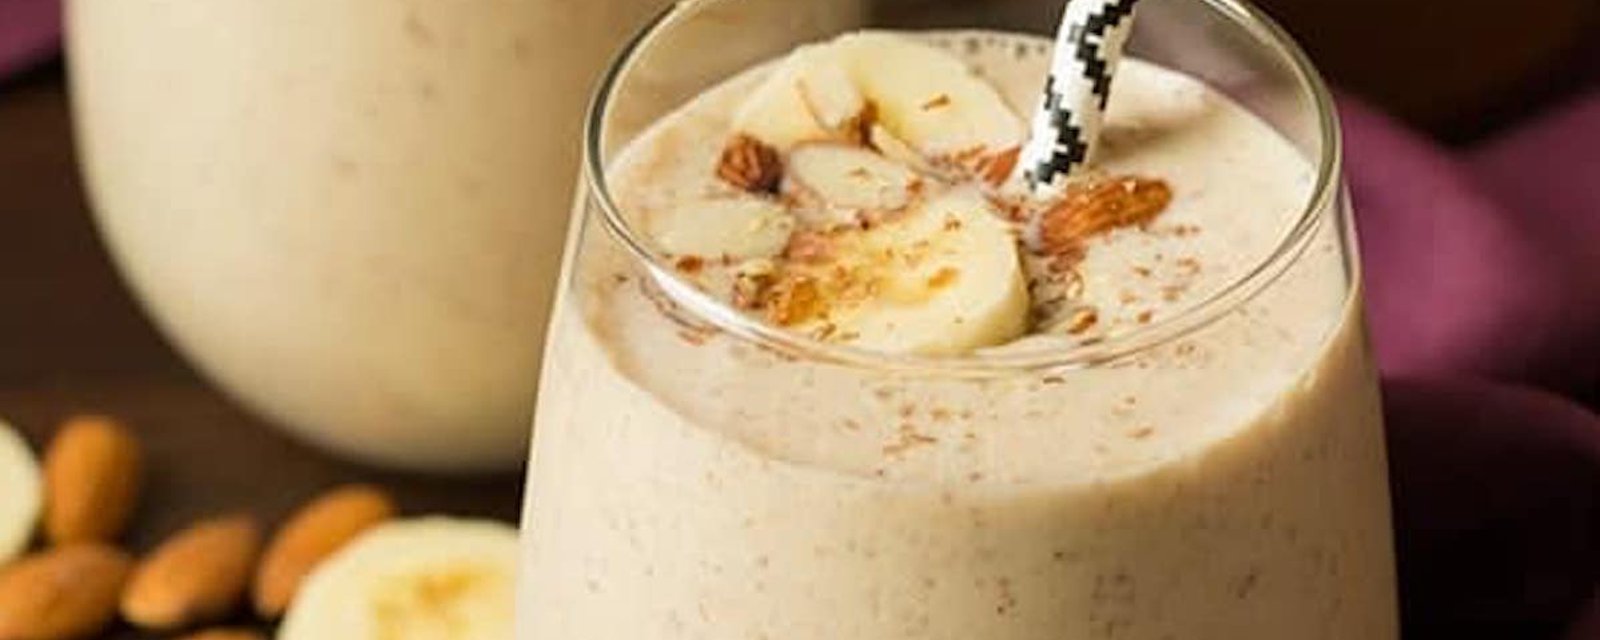 Un boost de vitamines: le smoothie aux bananes, amandes et graines de lins